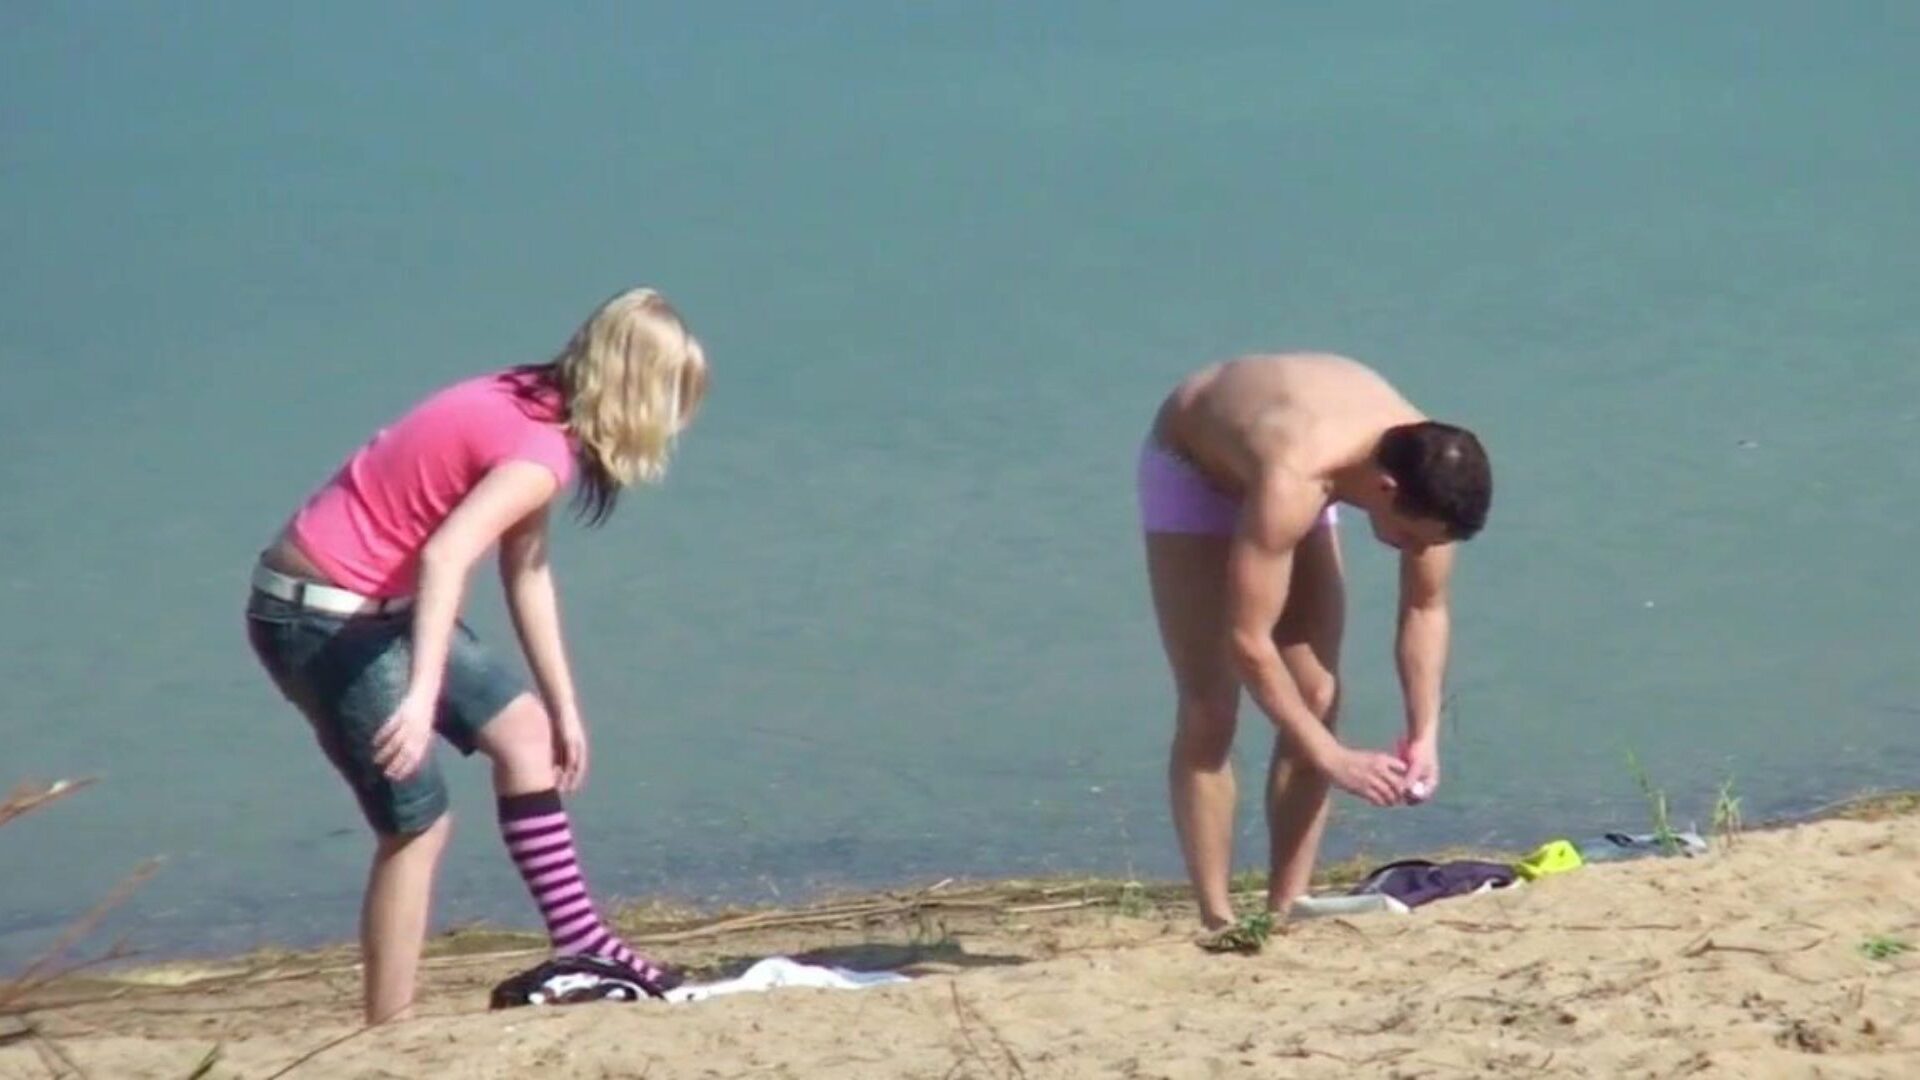 cuplu real de adolescenți pe plajă germană dracu 'voyeur de străin urmăriți cuplu de adolescenți reali pe plajă germană dracu' voyeur de străin episod pe xhamster - selecția finală de voyeur gratuit xxx & german nou hd porno tube vids